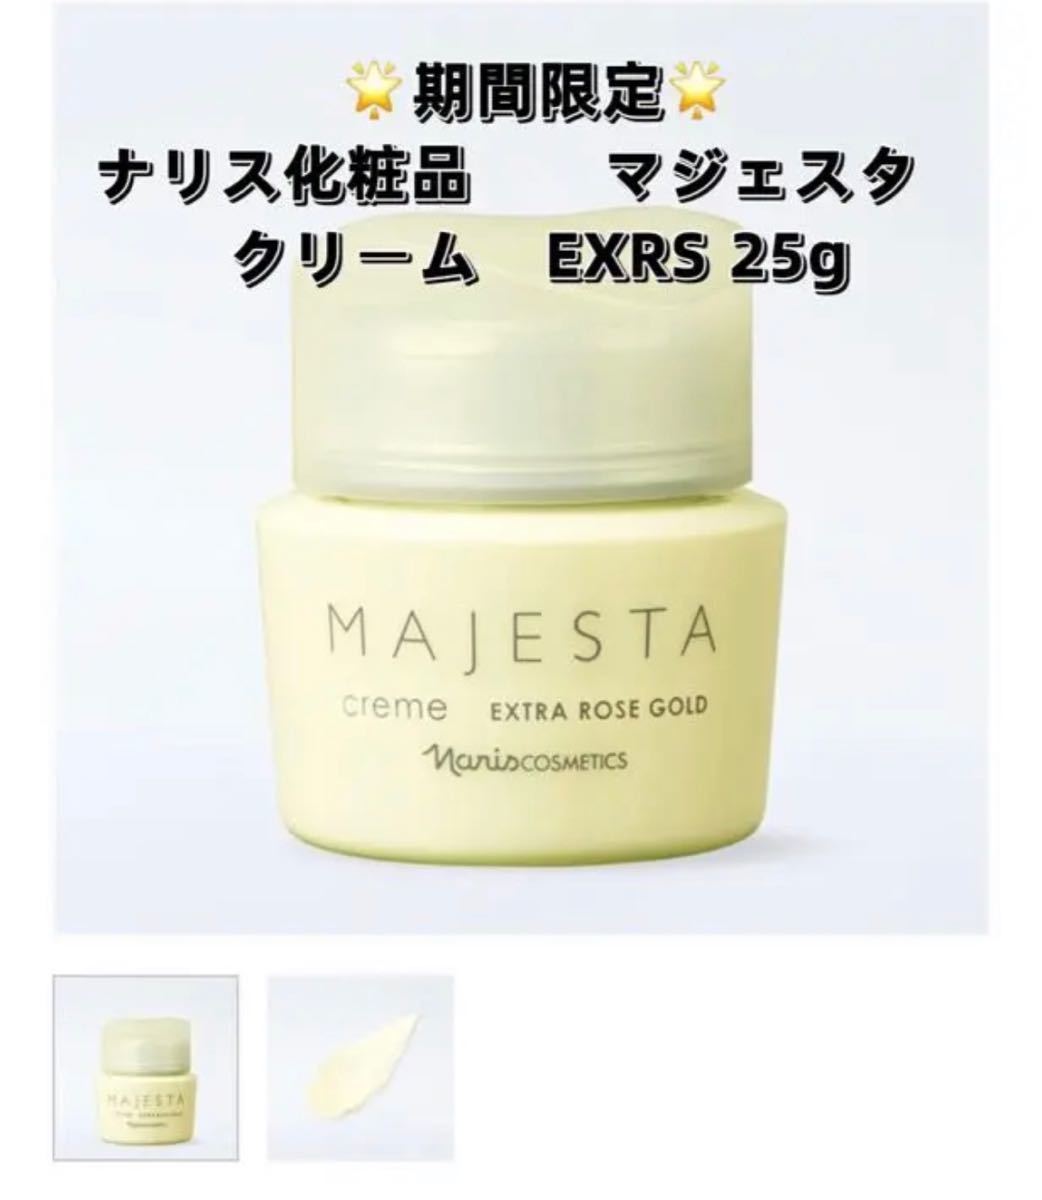 ナリス化粧品 期間限定 マジェスタ クリーム EXRS ゴールド 25g